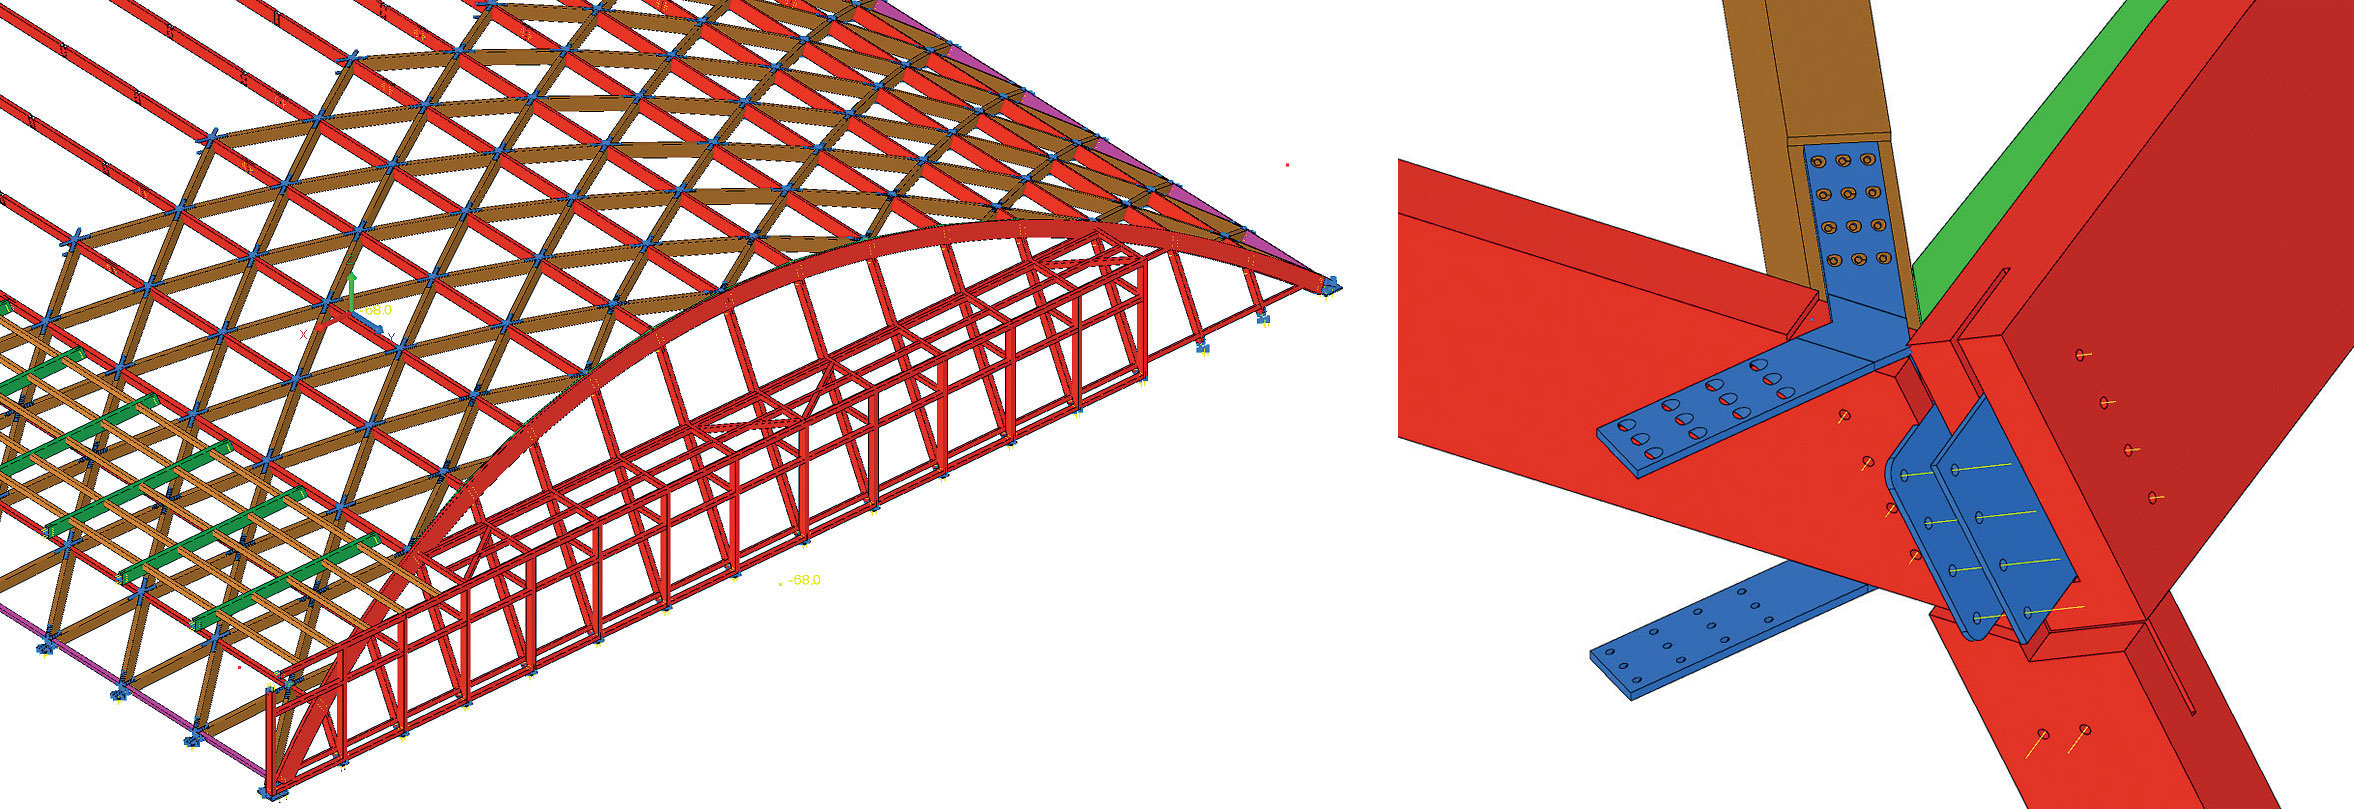 Obr. 3 Výstupy z 3D CAD modelování: a) prostorový model b) typický detail styčníku